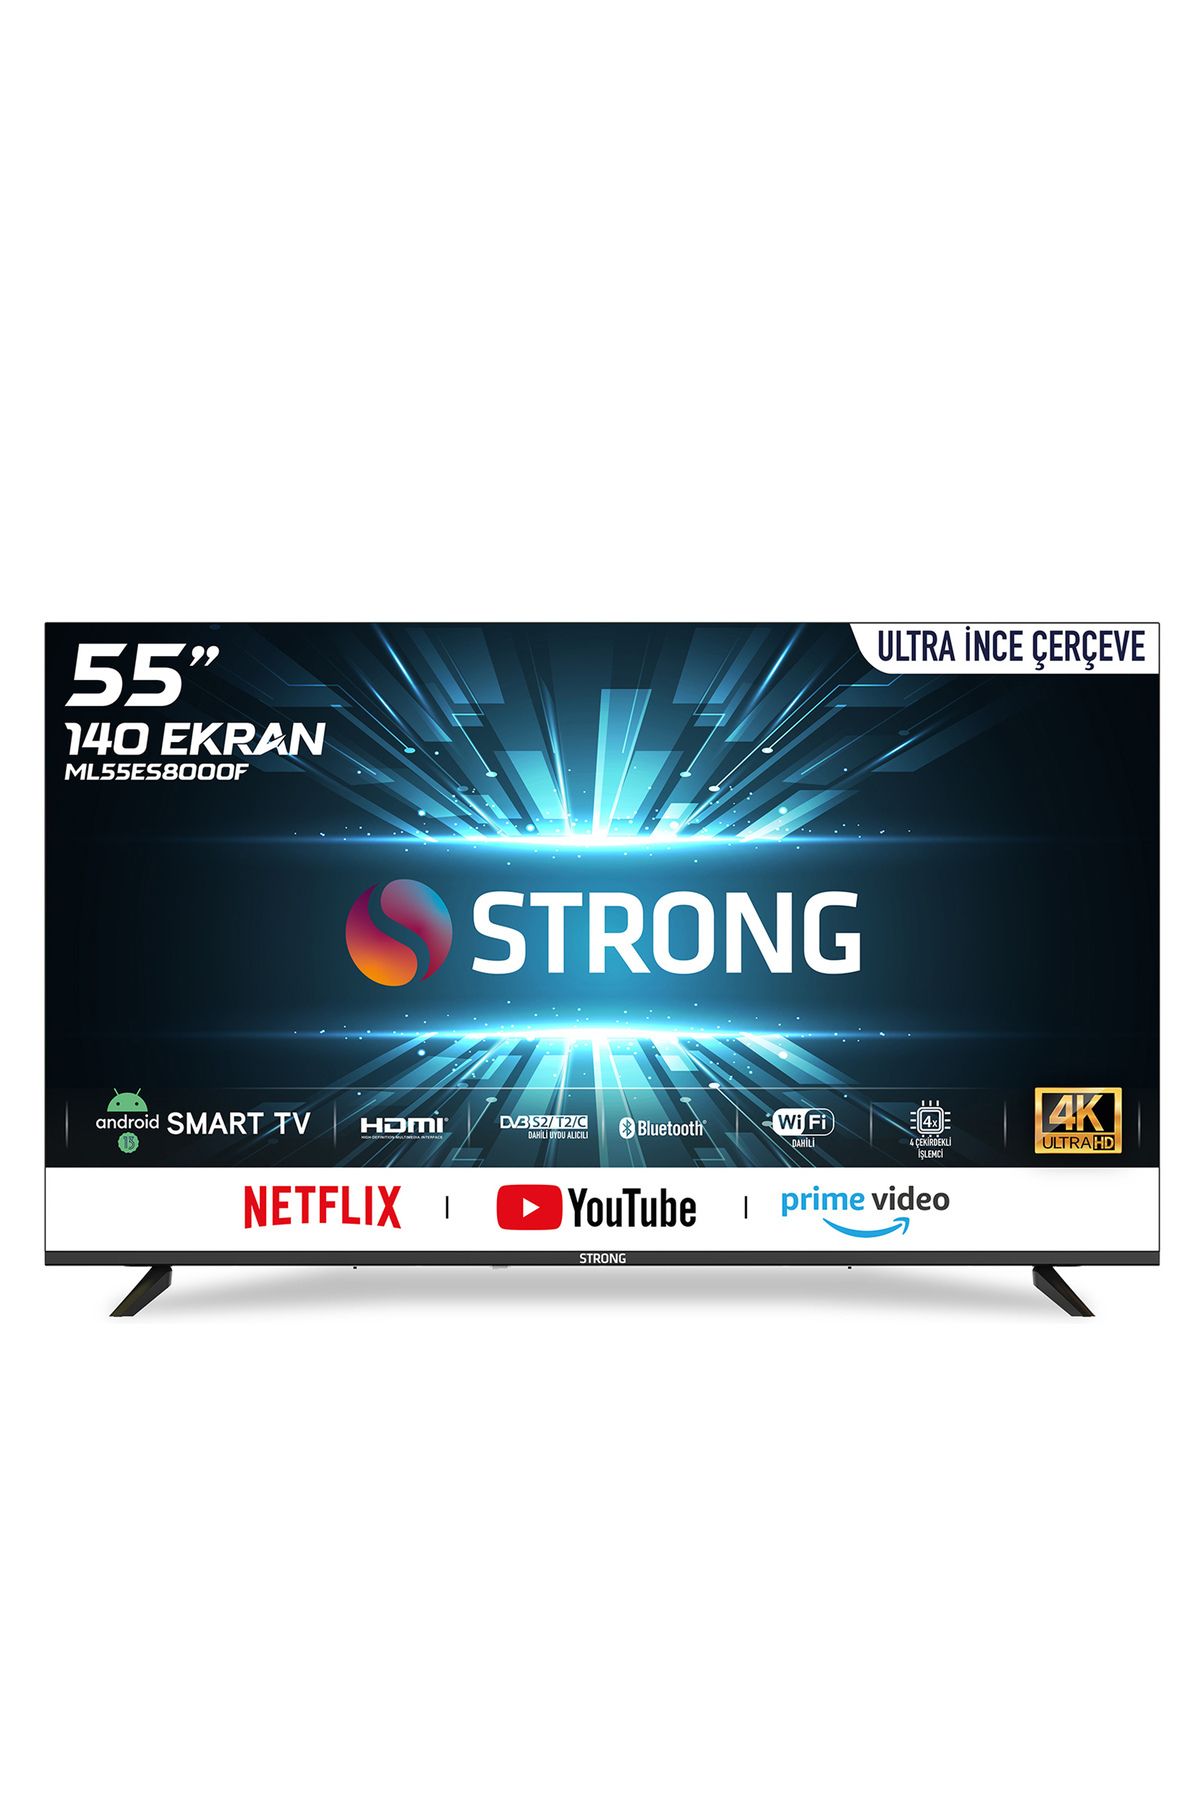 Strong Ml55es8000f 55’’ 140cm Ekran 4k Ultra Hd Android Smart Tv - Dahili Uydu Alıcılı | Ultra Ince Çerçeve